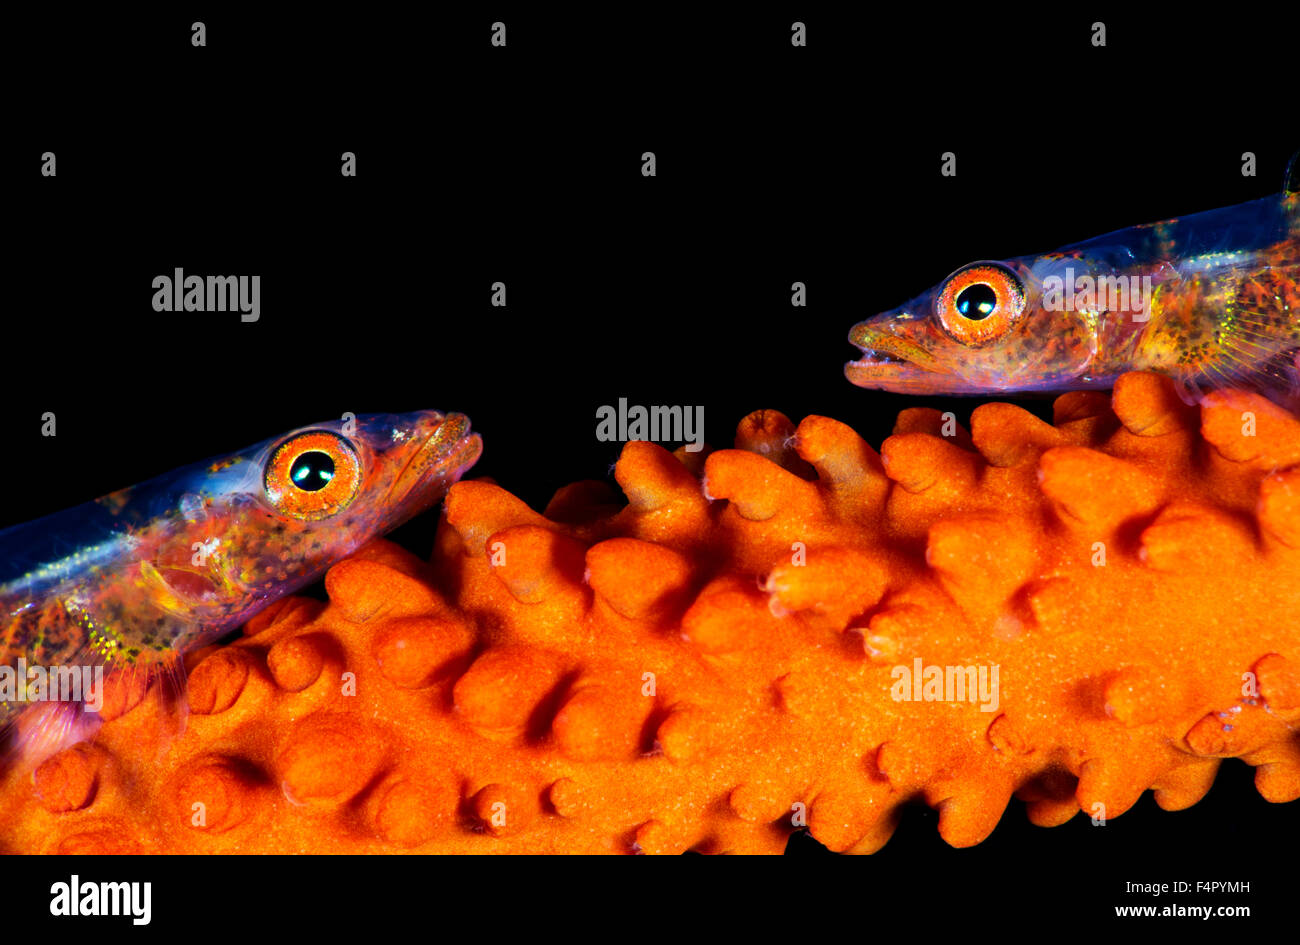 Zwei kleine Fische, gemeinsamen Geist Grundeln, Angesicht zu Angesicht auf ihre Peitsche Korallen Hause versuchen nicht bemerkt zu werden Stockfoto